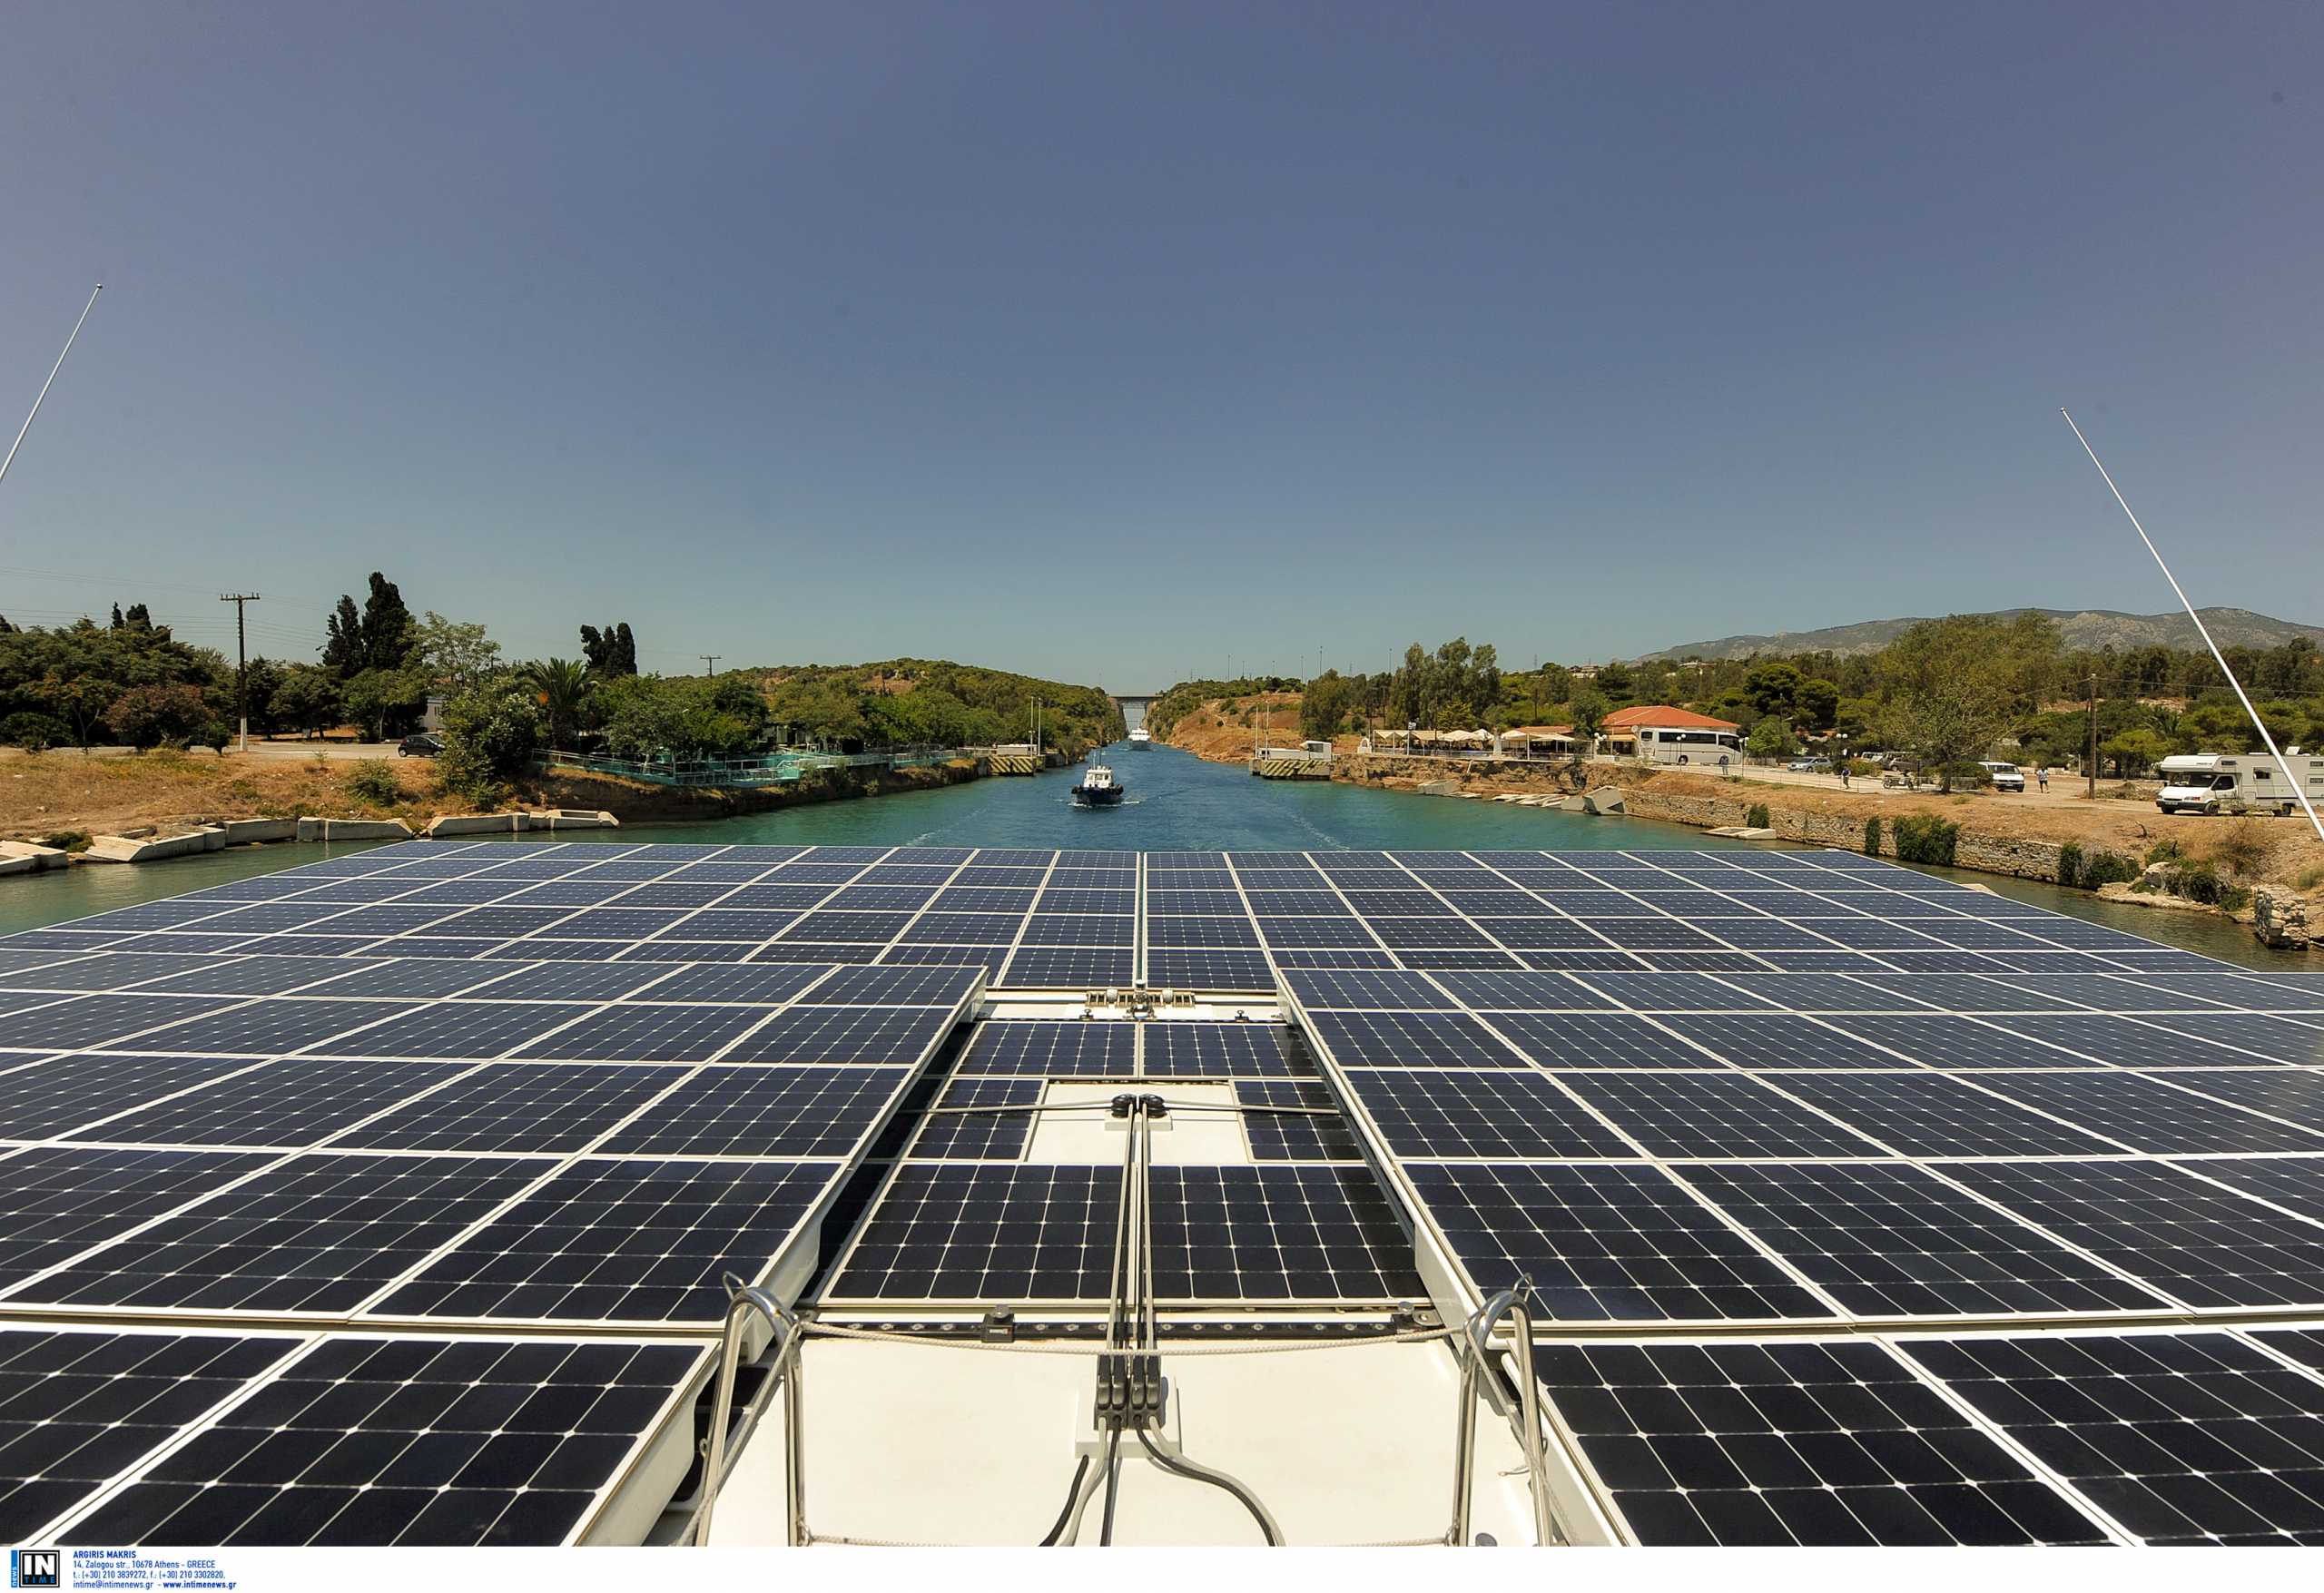 Τέρνα Ενεργειακή: Νέες επενδύσεις στον τομέα των πλωτών φωτοβολταϊκών πάρκων